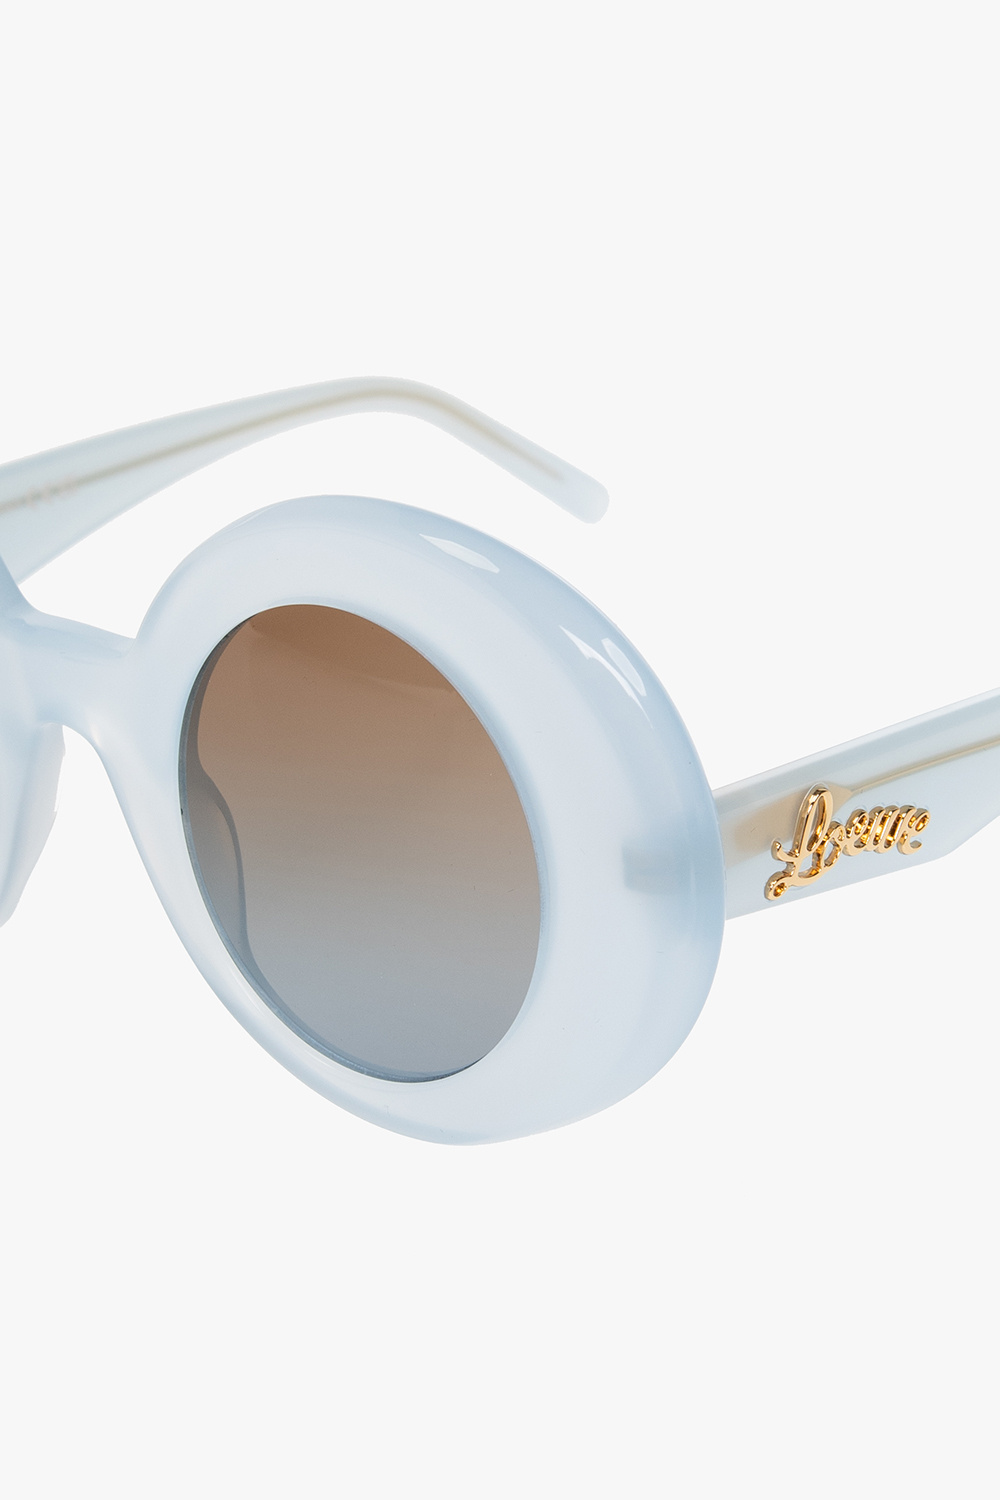 Loewe Girls Gold Round Sunglasses